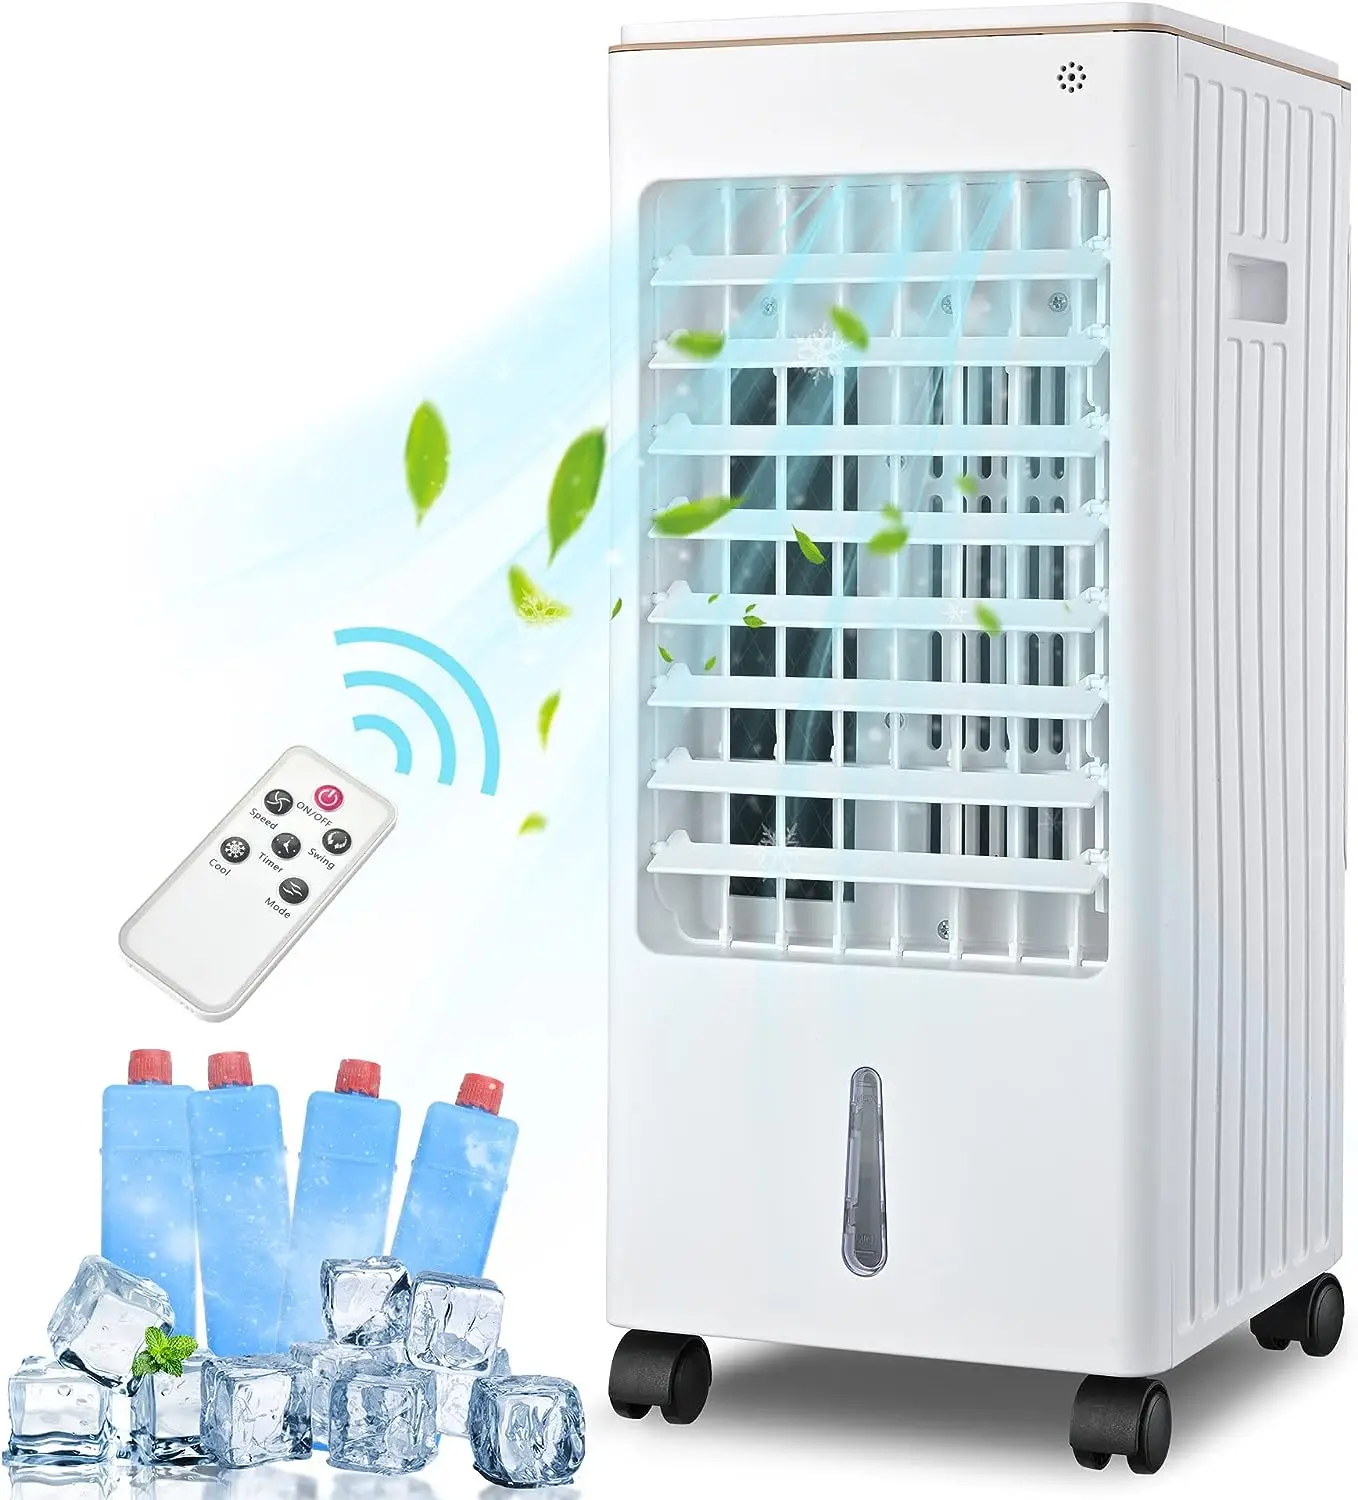 EM 1 Portátil Evaporativo de Ar mais frio, Ventilador de Refrigeração w/Umidificador & Controle Remoto,3 Velocidades de Vento,Destacável Tanque de Água e 4